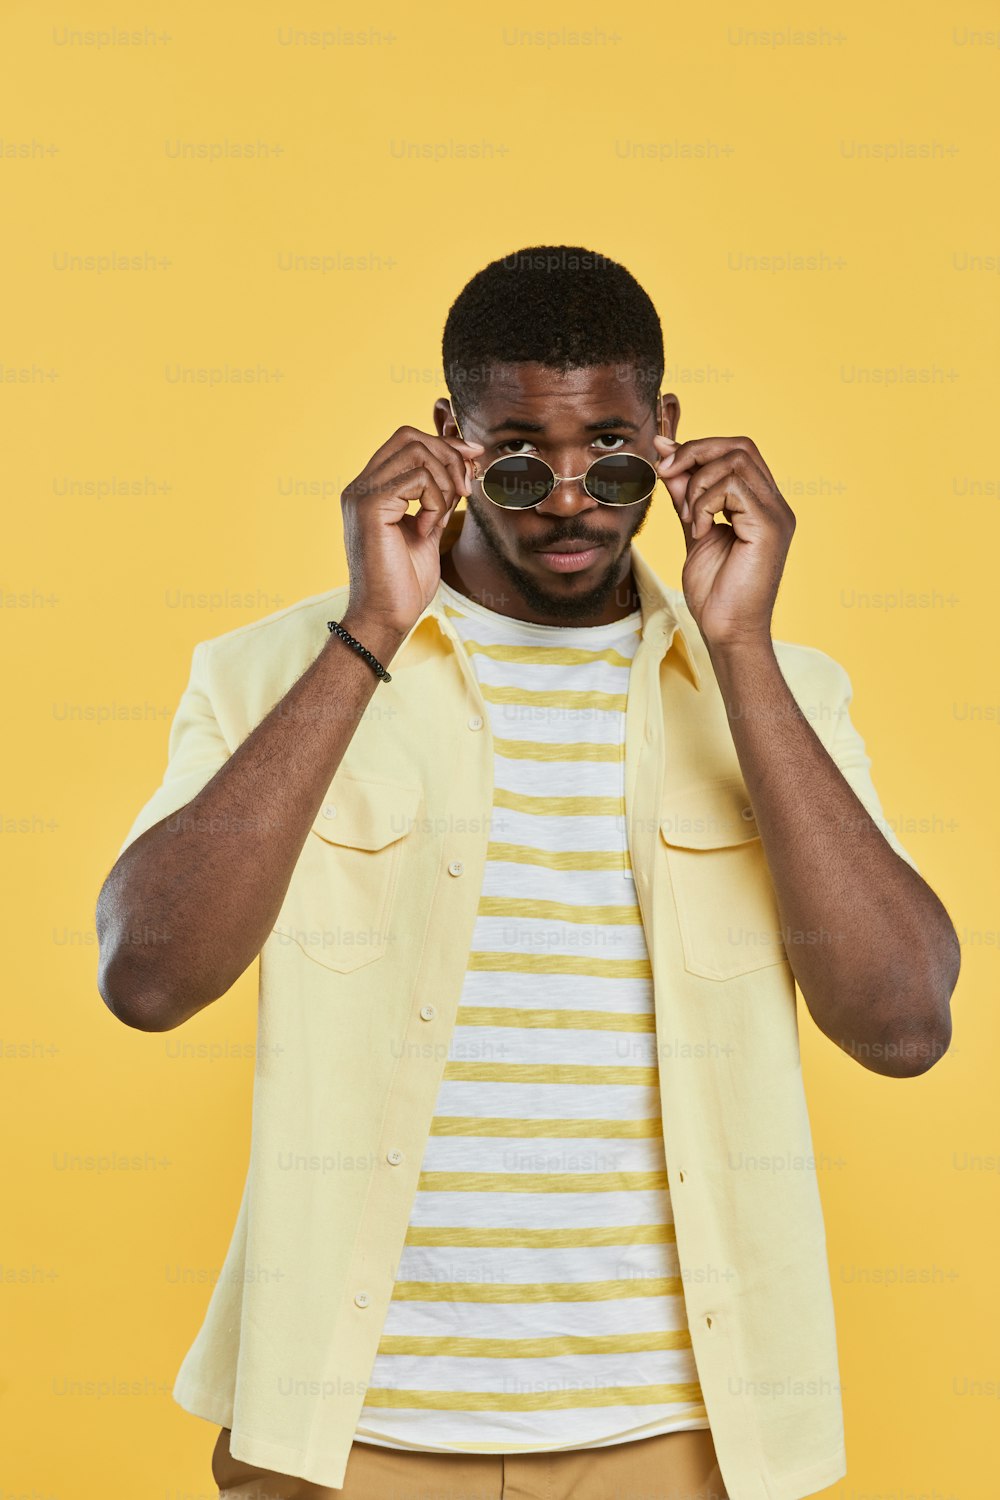 スタジオで黄色の背景に立ちながらカメラを見ているサングラスをかけたトレンディなアフリカ系アメリカ人男性の垂直方向のポートレート